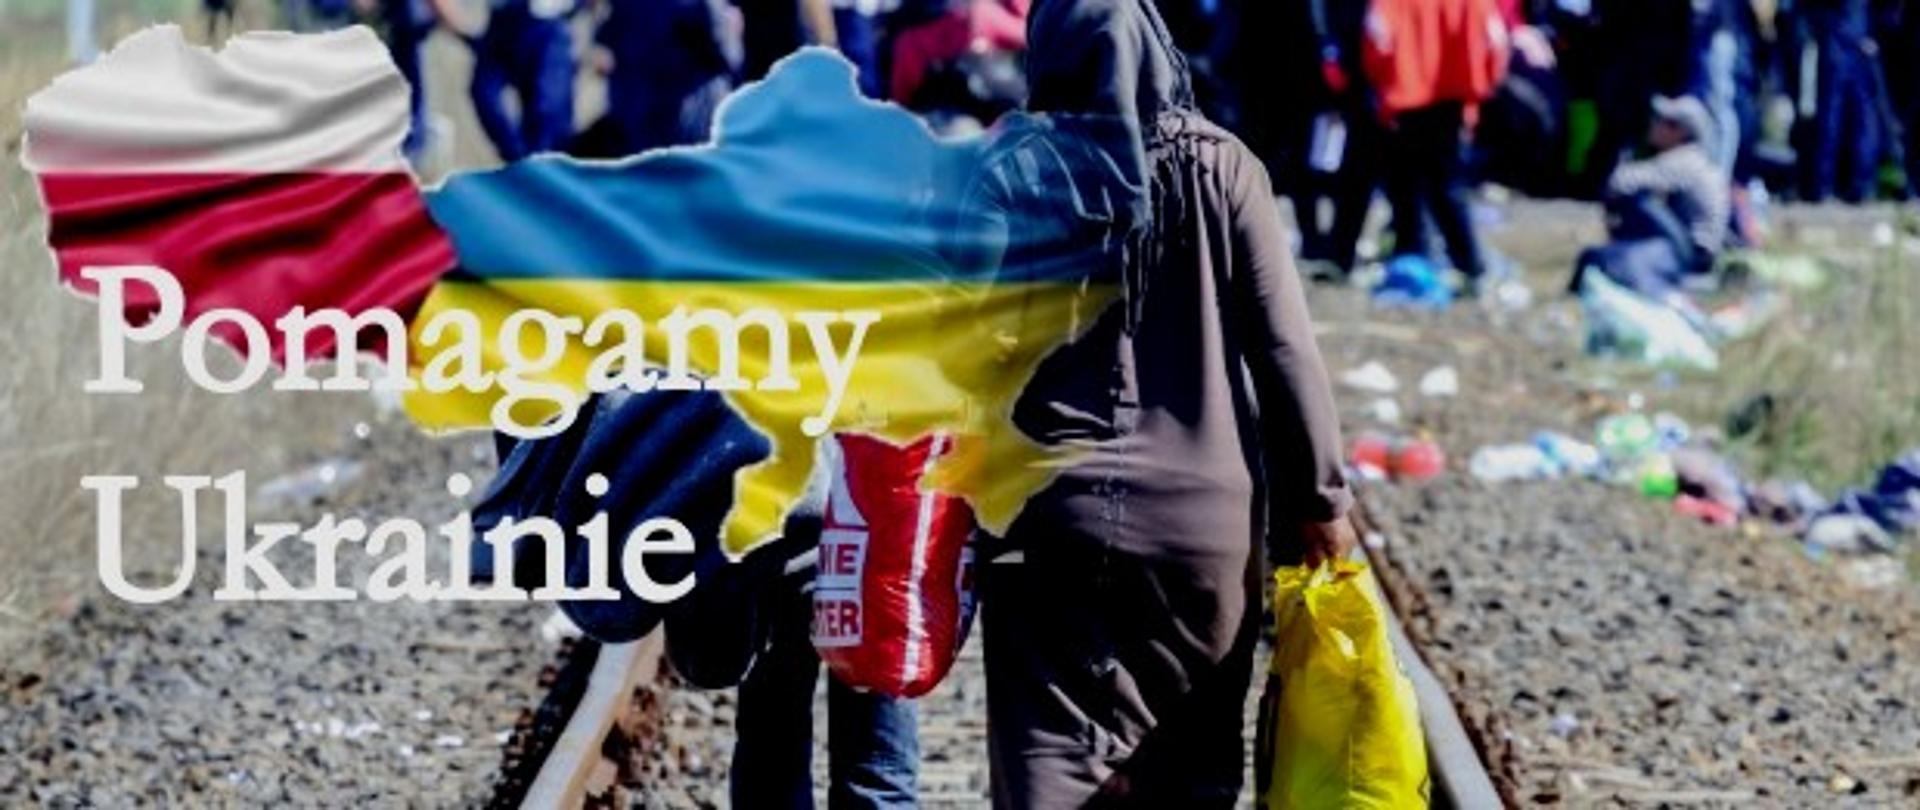 Zdjęcie przedstawia kobietę idącą wzdłuż torów kolejowych z dzieckiem trzymanym za rękę. W tle widoczna jest duża grupa ludzi stojąca lub siedząca obok torowiska. Kobieta w prawym ręku trzyma wypełnioną rzeczami żółtą torbę. Na zdjęcie naniesione są obrysy granic Polski i Ukrainy w barwach narodowych tych państw oraz napis koloru białego Pomagamy Ukrainie.